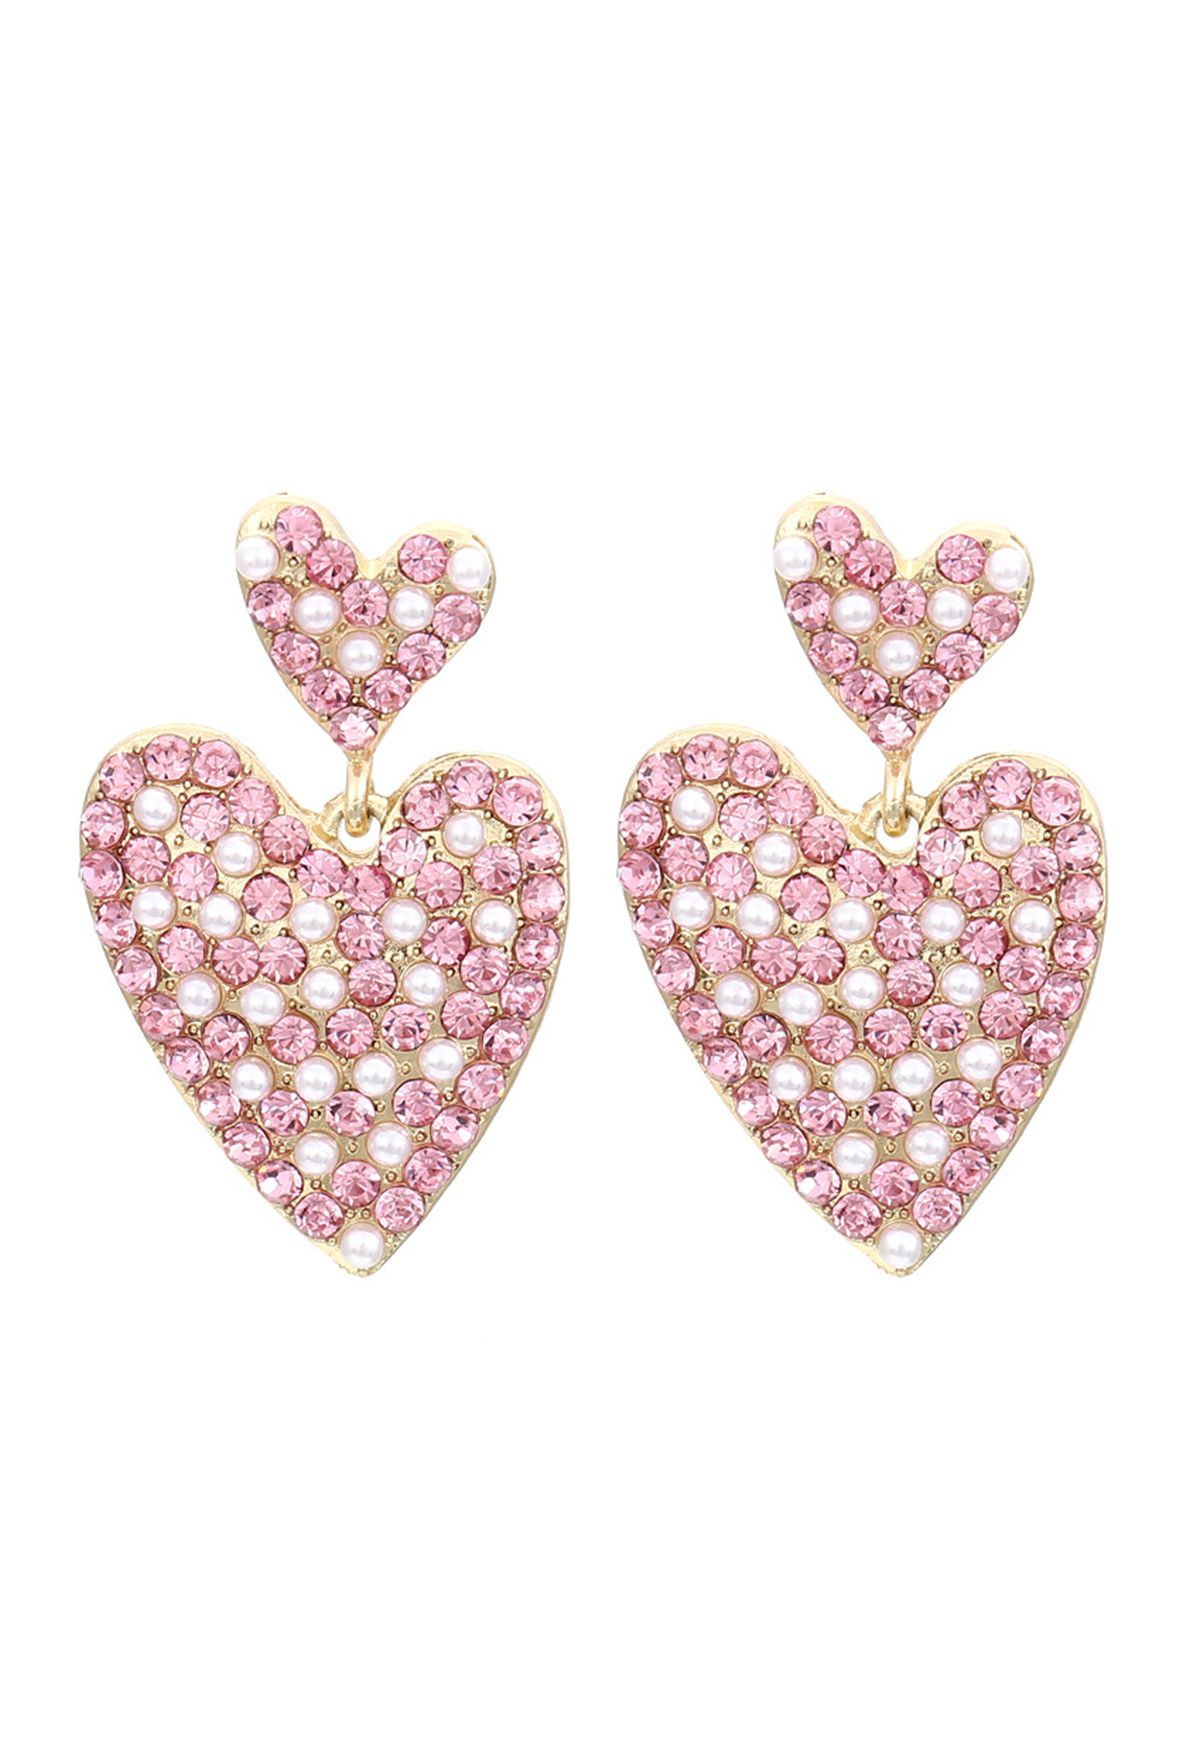 Preciosos pendientes de diamantes de imitación con forma de corazón de perlas